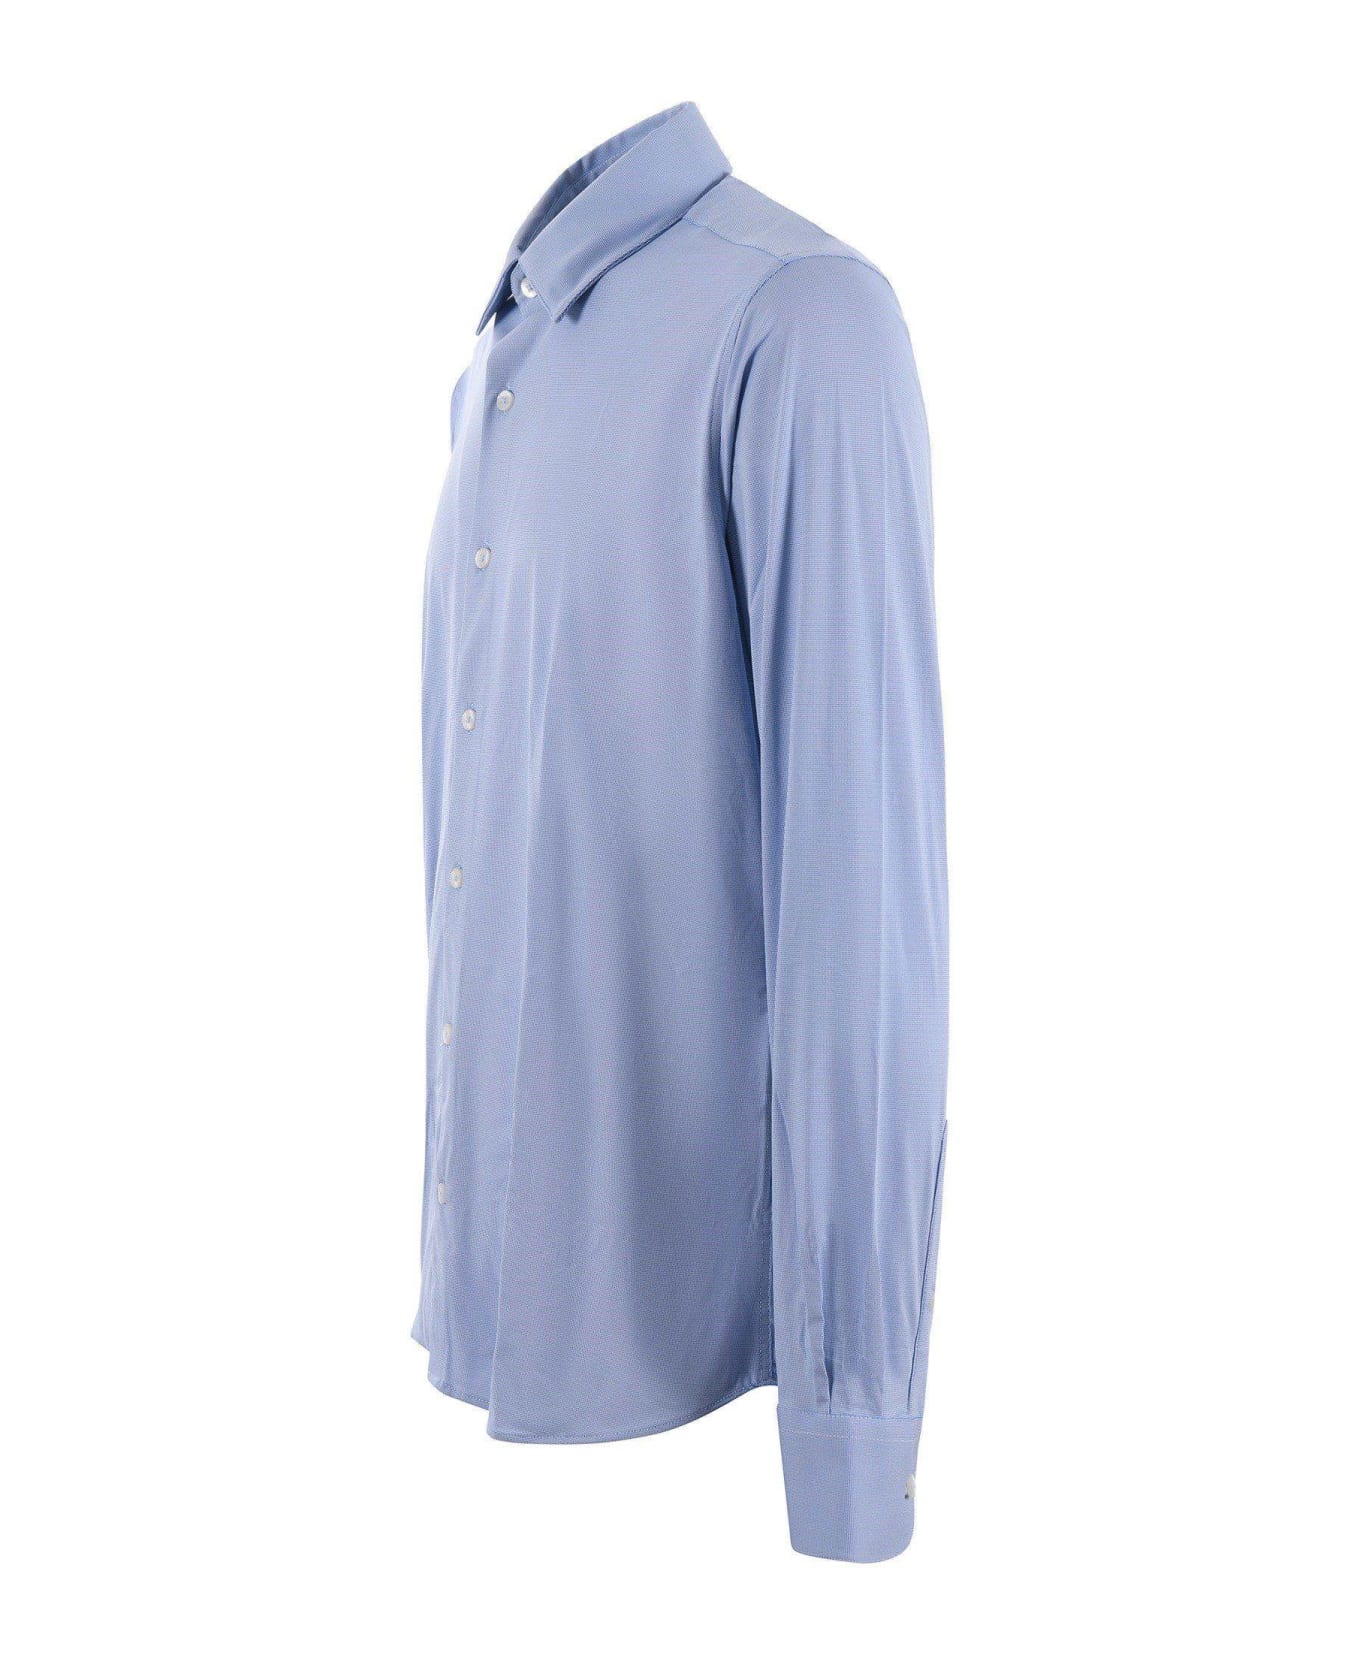 RRD - Roberto Ricci Design Camicia Rrd In Jersey Elasticizzato Disponibile Store Scafati - Bianco/blu